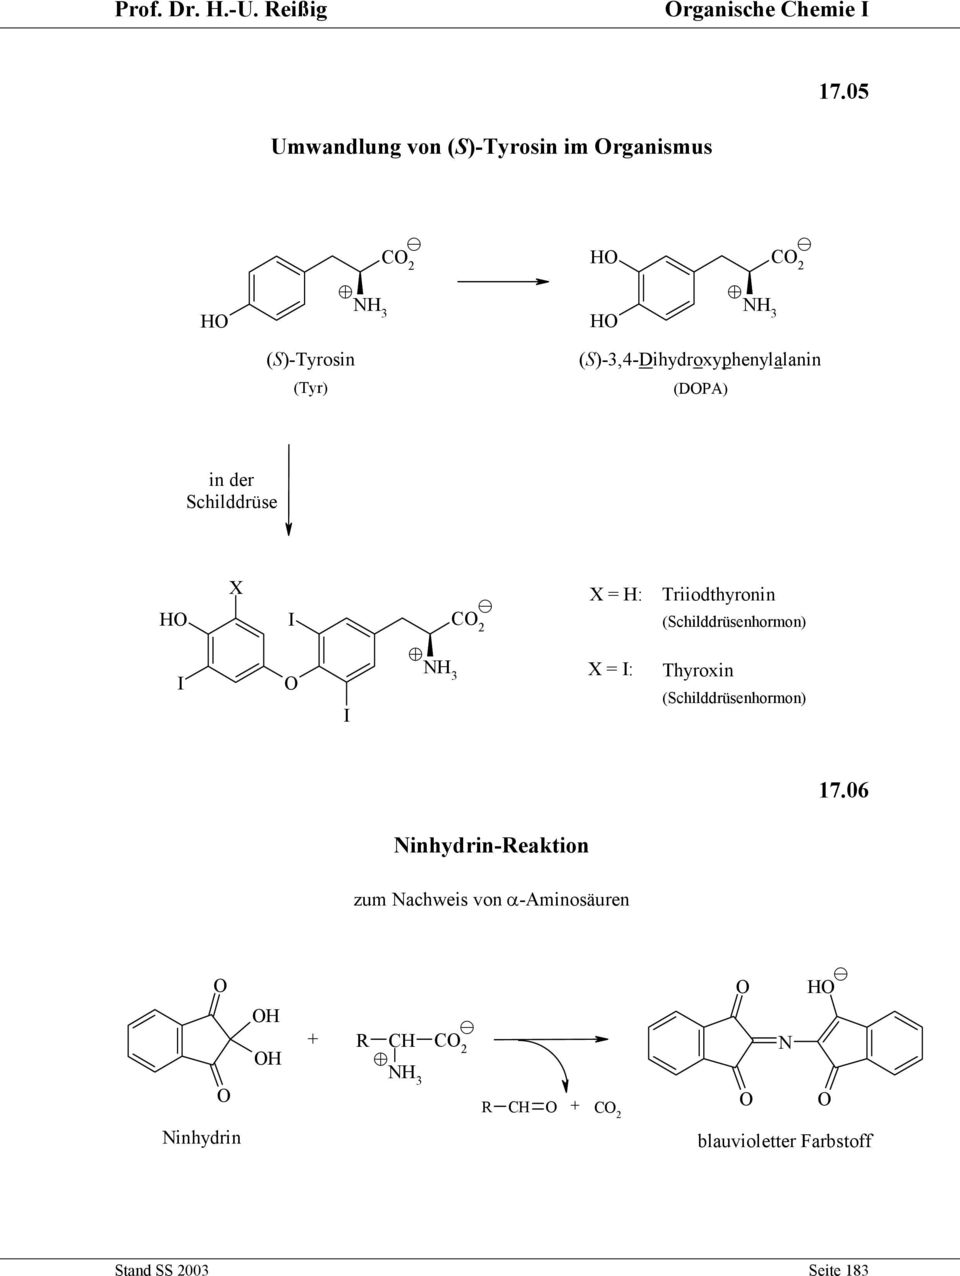 ()-3,4-Dihydroxyphenylalanin (DPA) in der childdrüse X I C 2 X = : Triiodthyronin